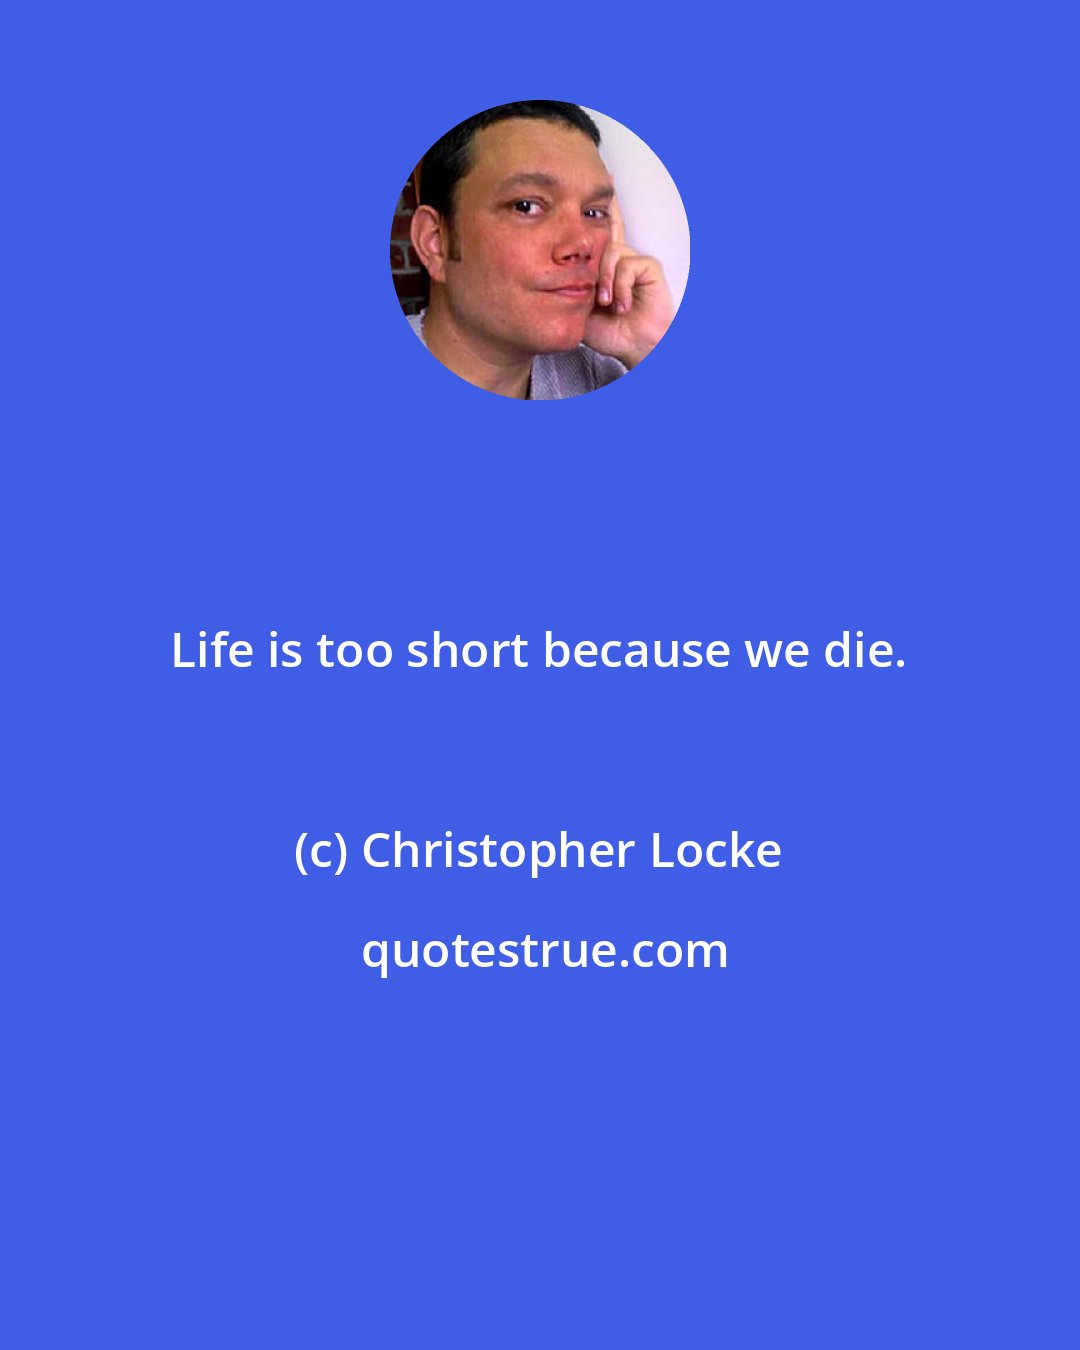 Christopher Locke: Life is too short because we die.